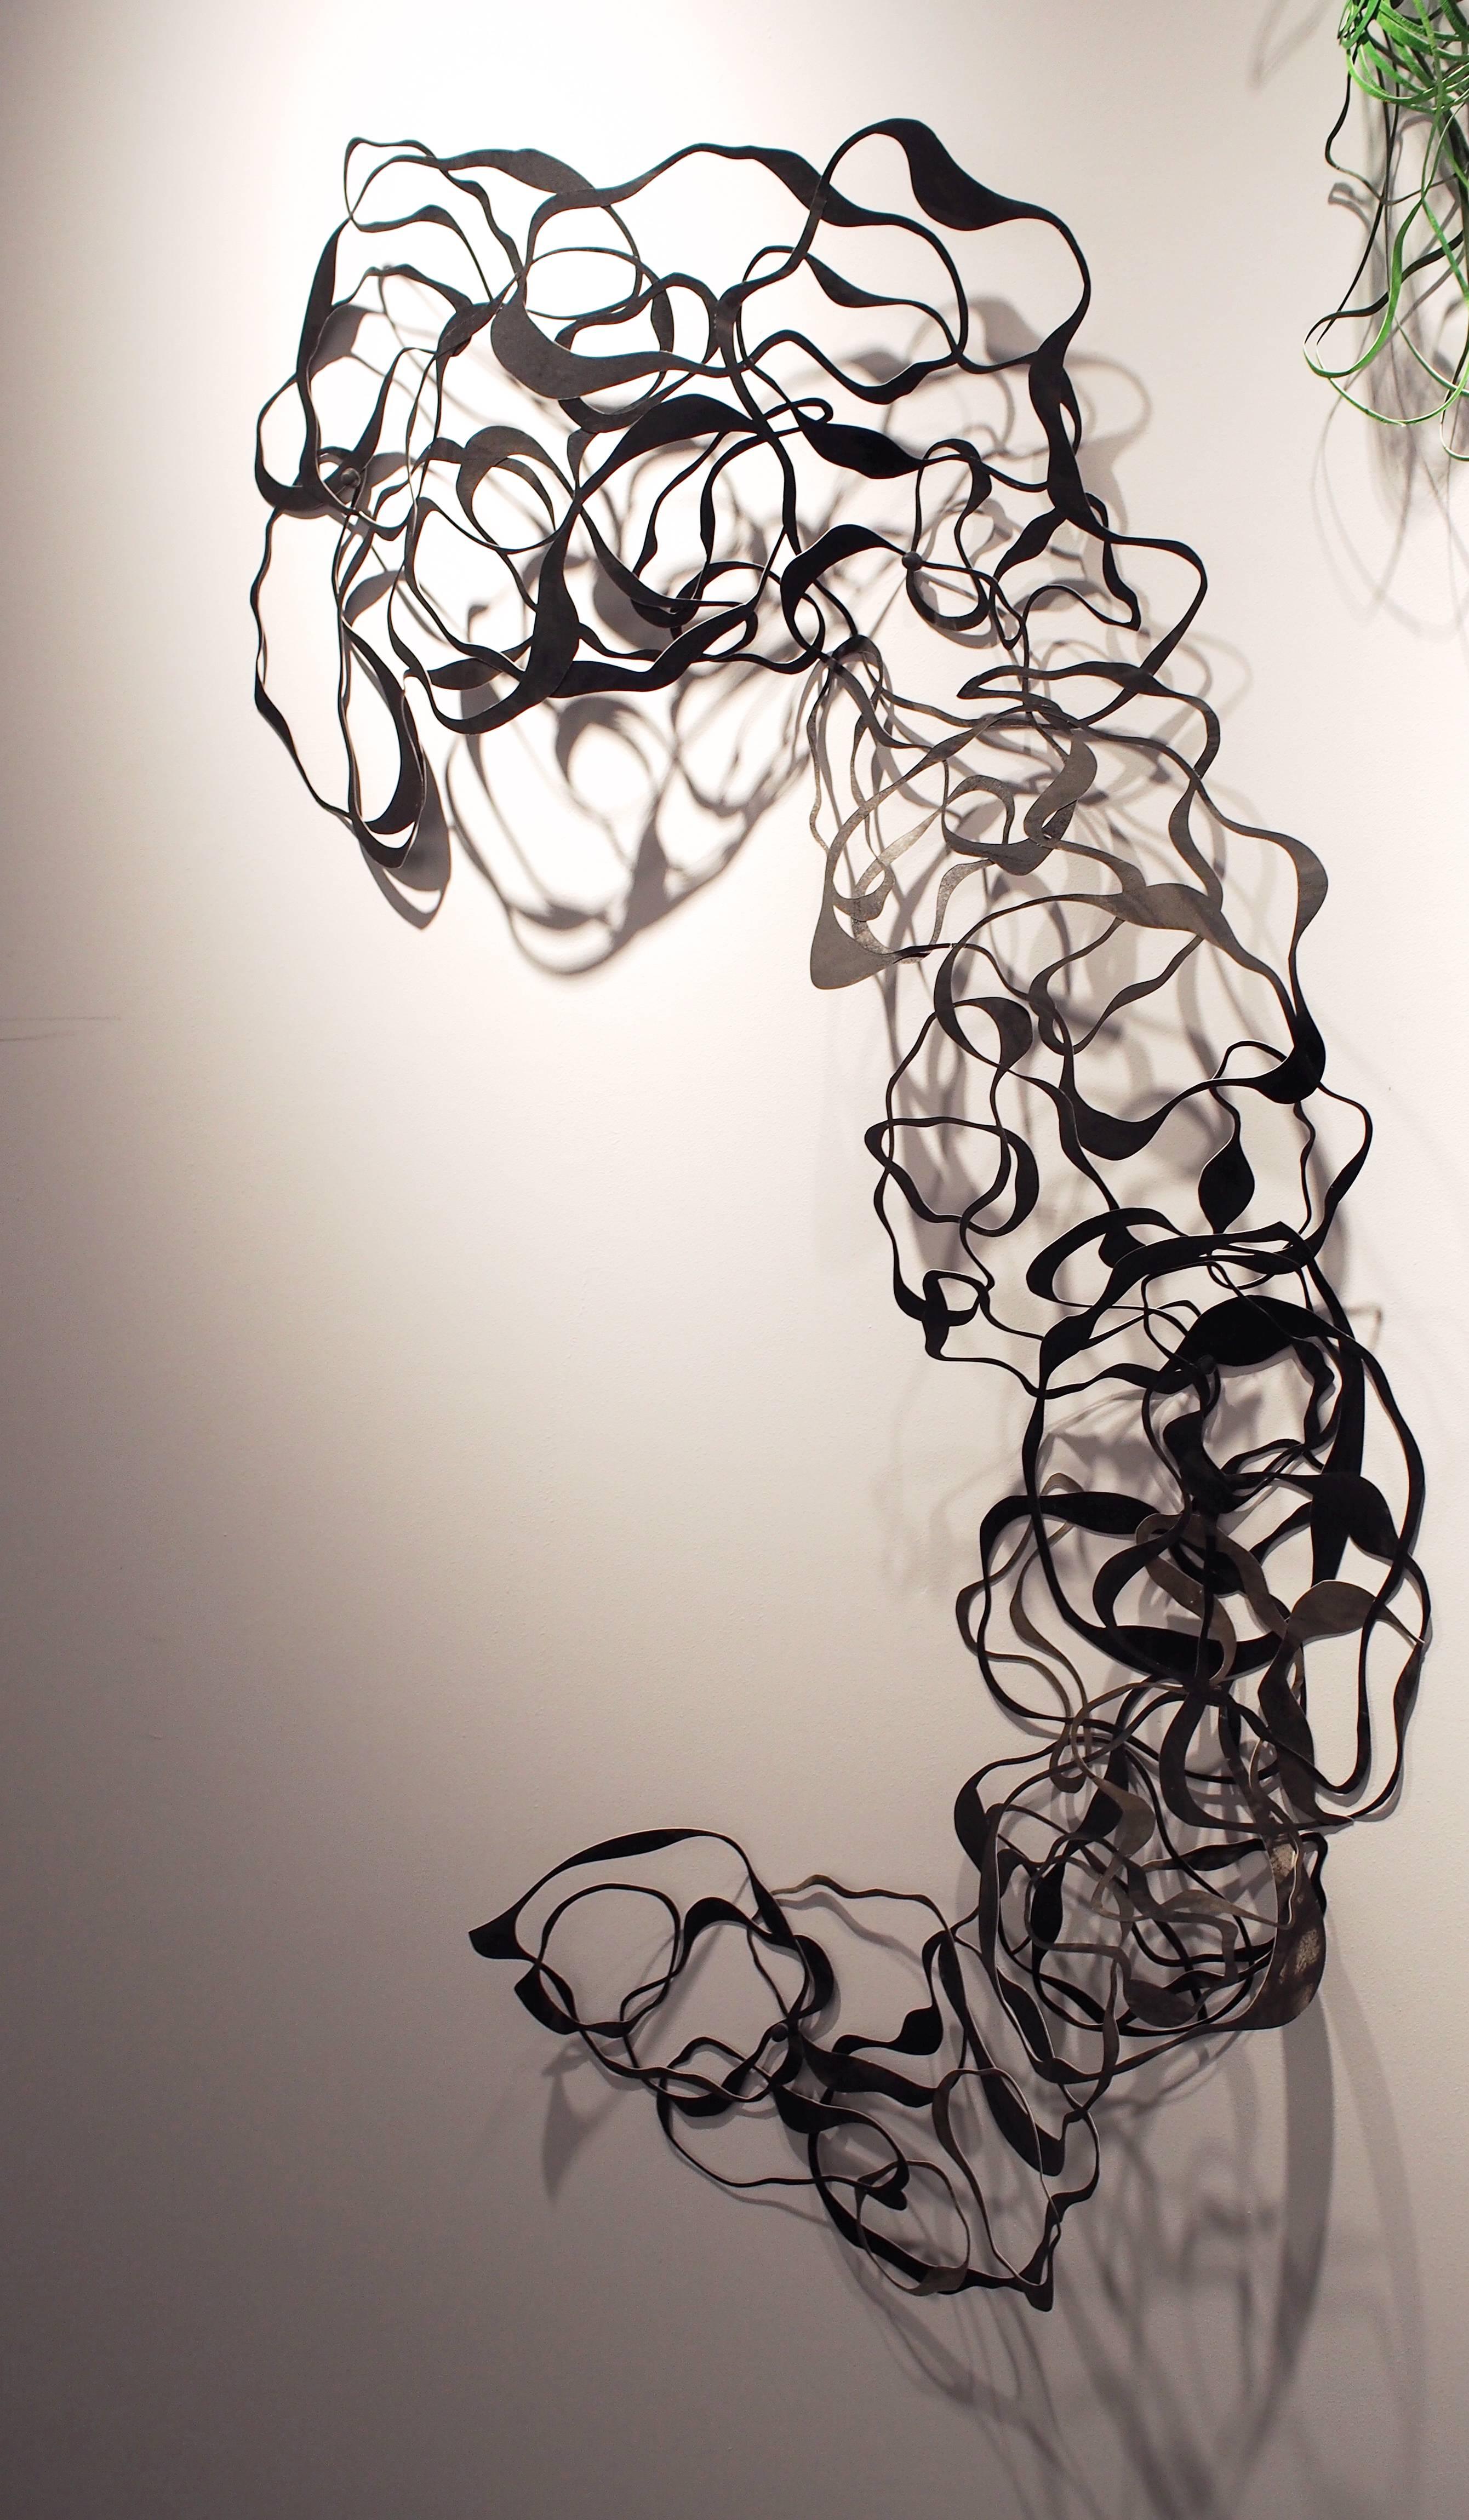 Barbara Owen Abstract Sculpture - Calligraphy